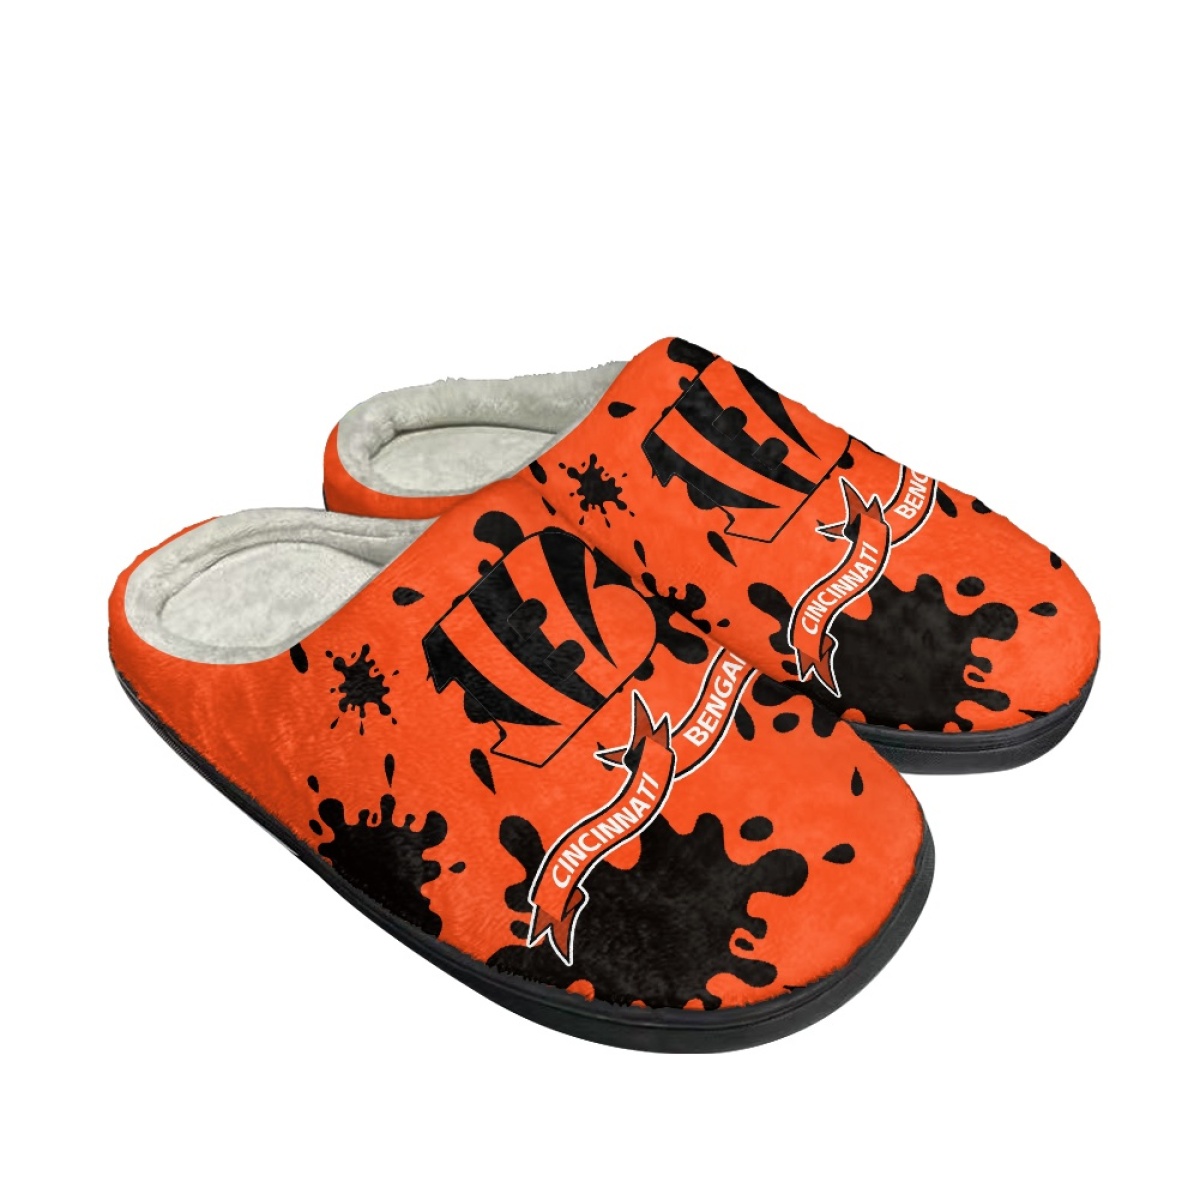 Men's Cincinnati Bengals Slippers/Shoes 005